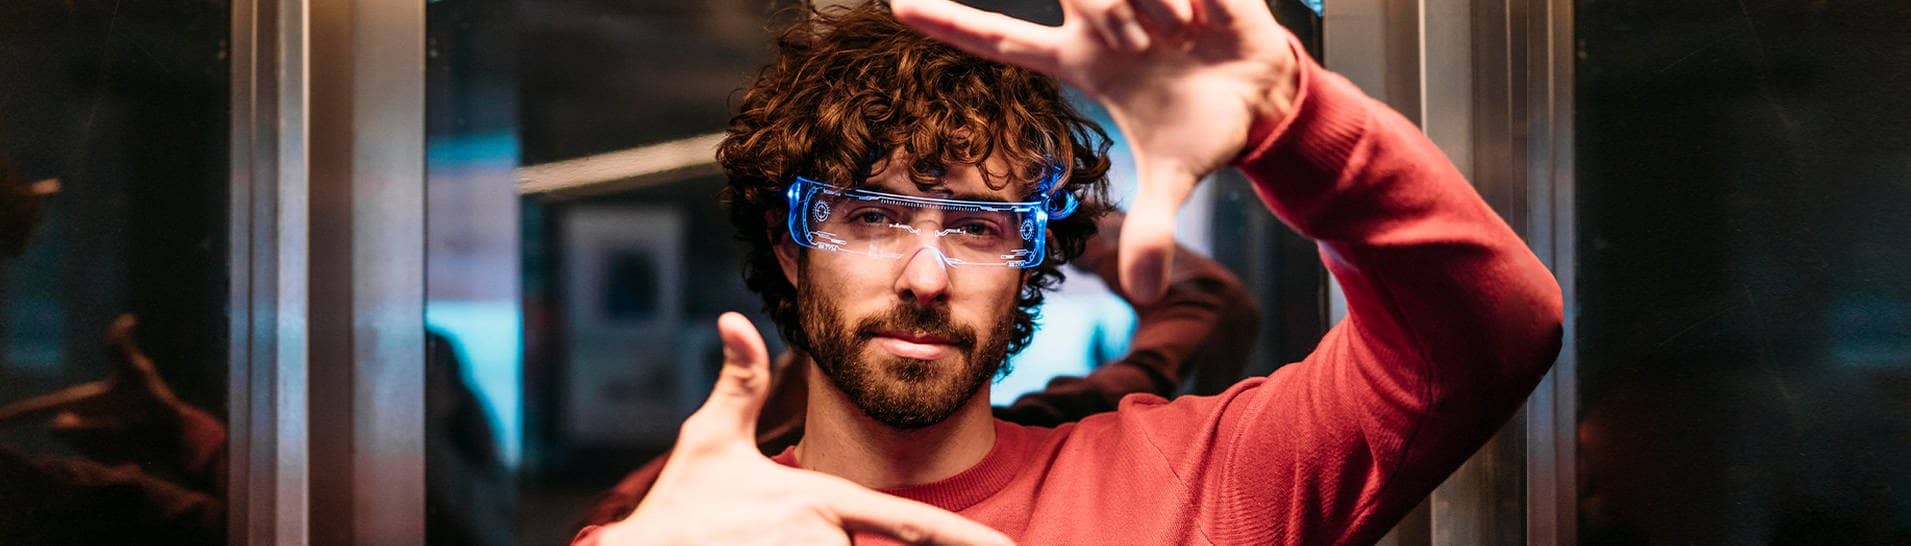 Ein Mann mit rotem Oberteil hat eine smarte Brille auf, die mit künstlicher Intelligenz funktioniert